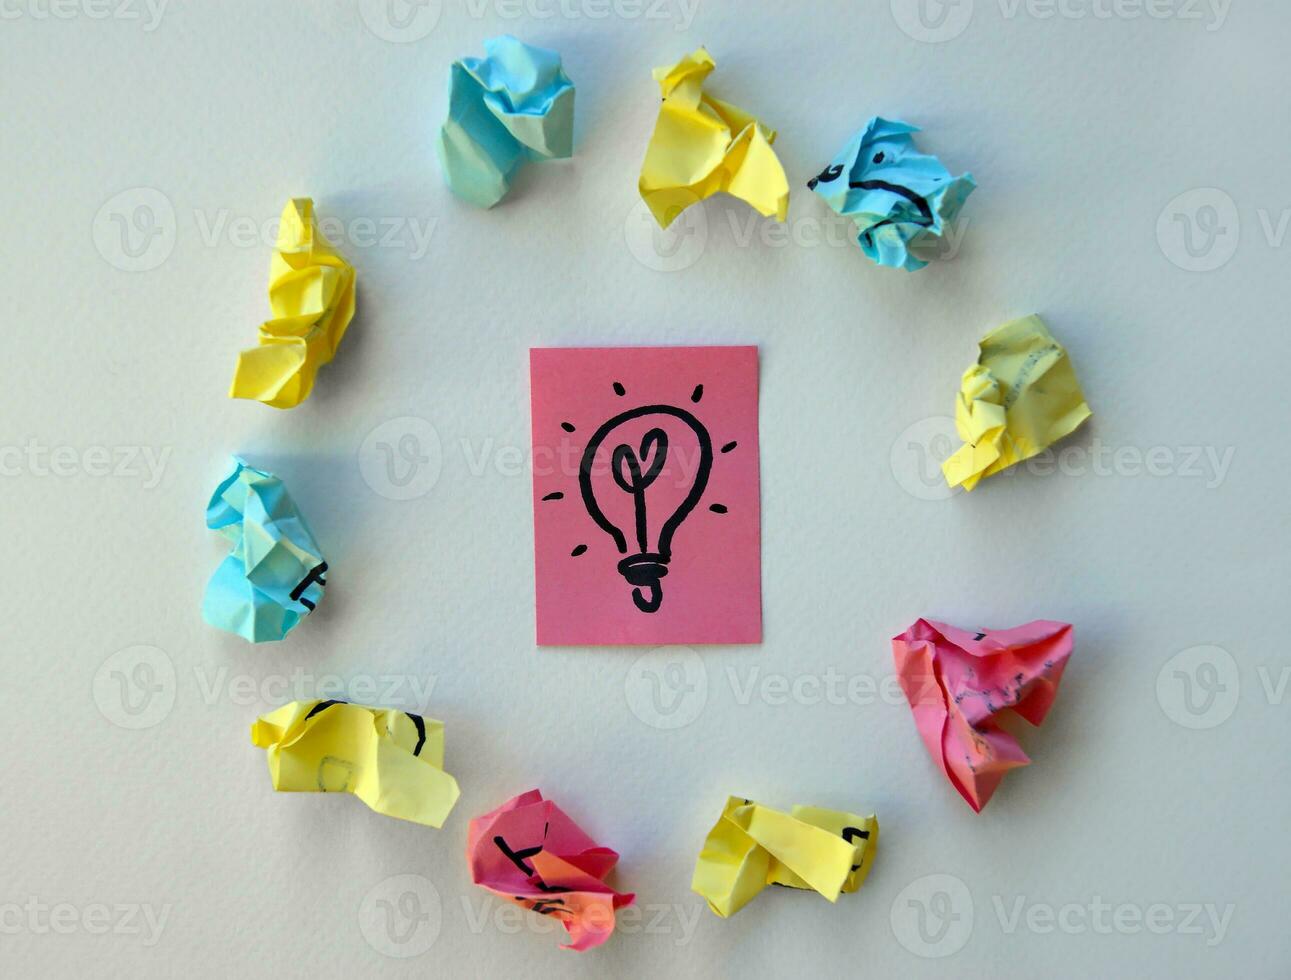 em a Rosa Folha é pintado uma luminária Como uma símbolo do Ideias e entendimento. foto